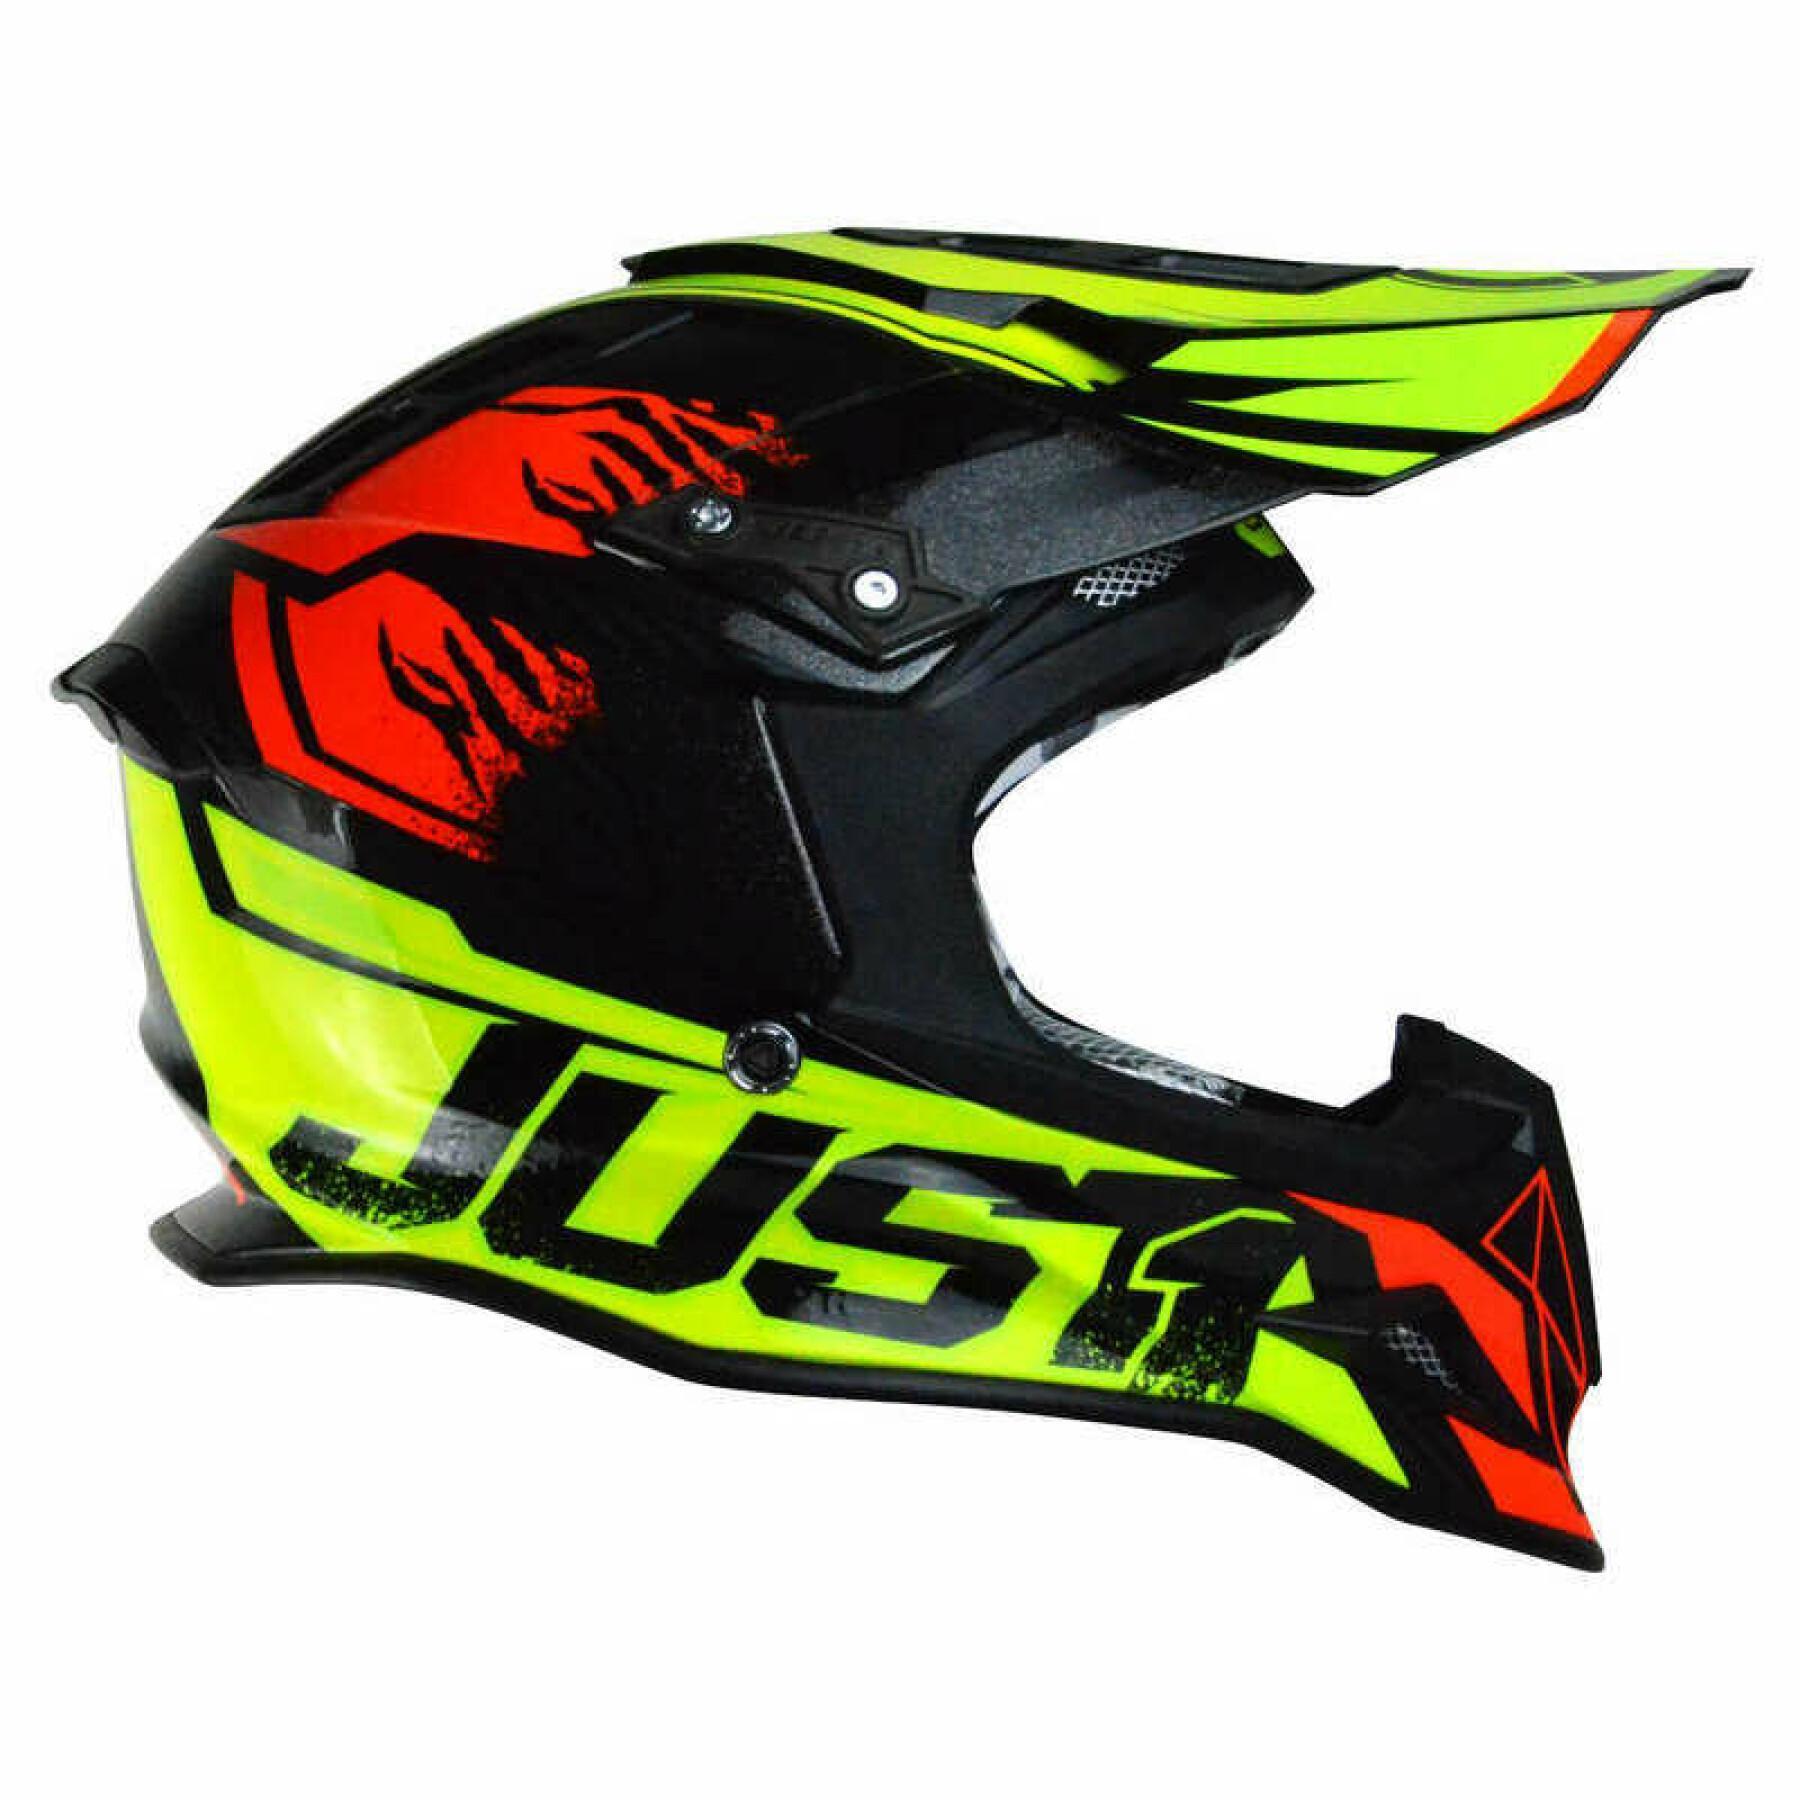 Motocrosshjälm Just1 J12 - Dominator